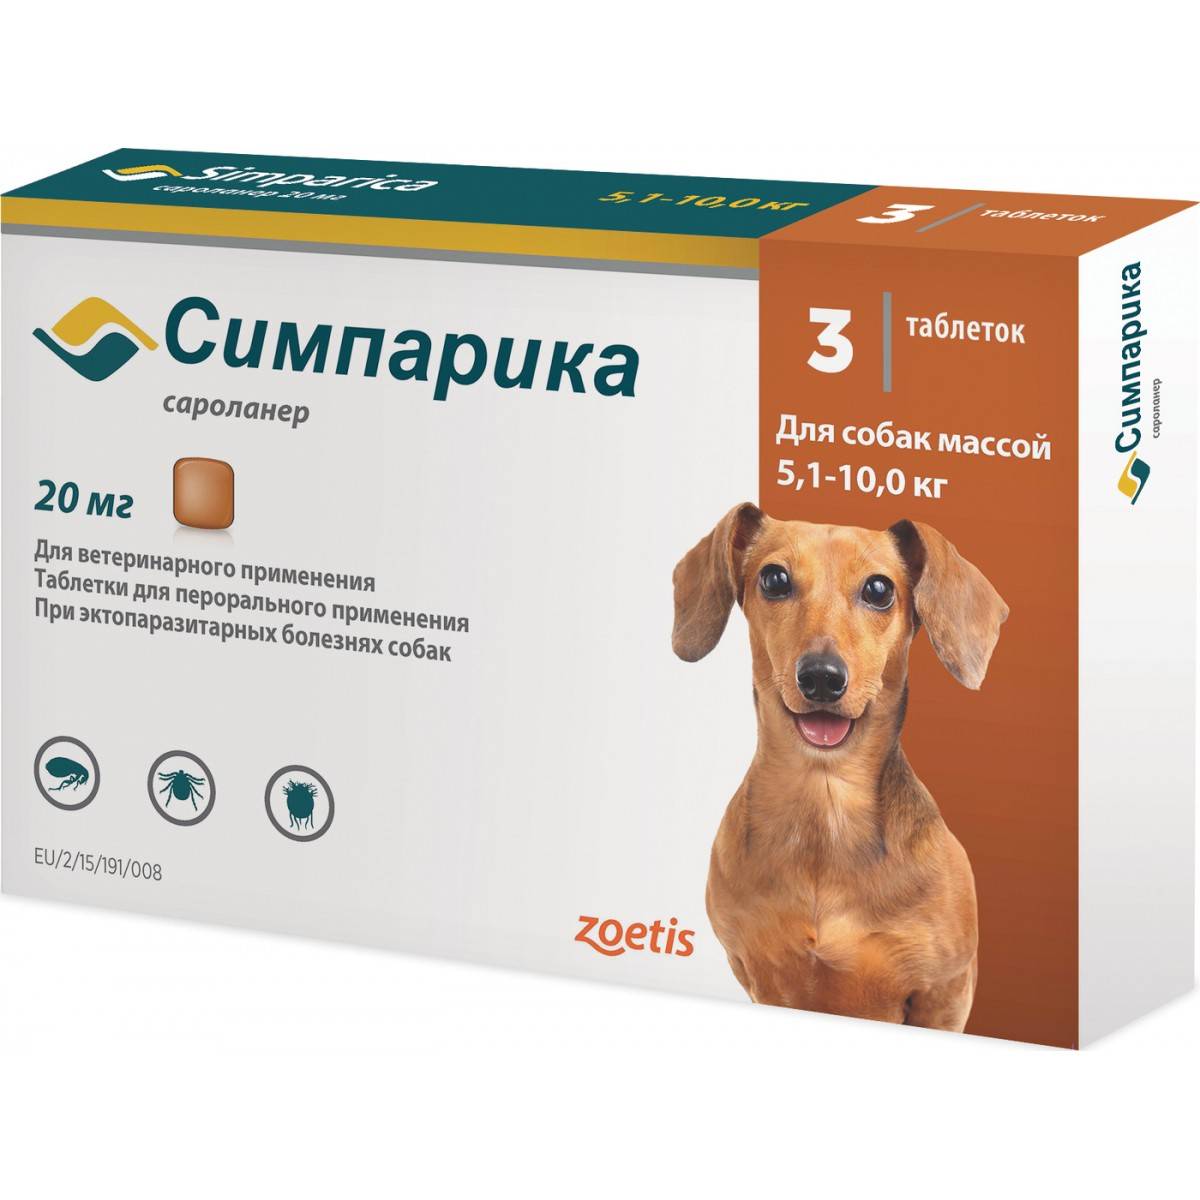 Эффективны ли таблетки от блох для собак в борьбе против паразитов? читайте!